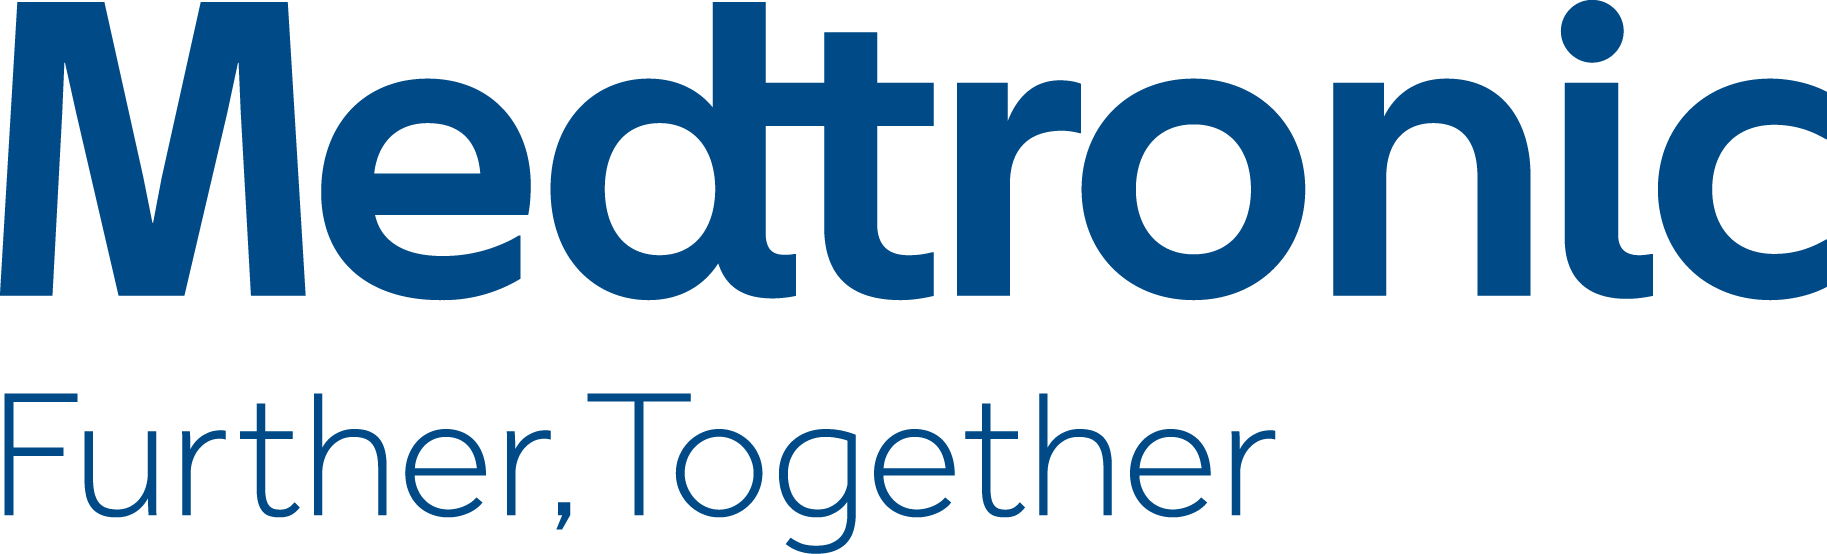 Medtronic Logo - Medtronic logo - National Osteoporosis Foundation